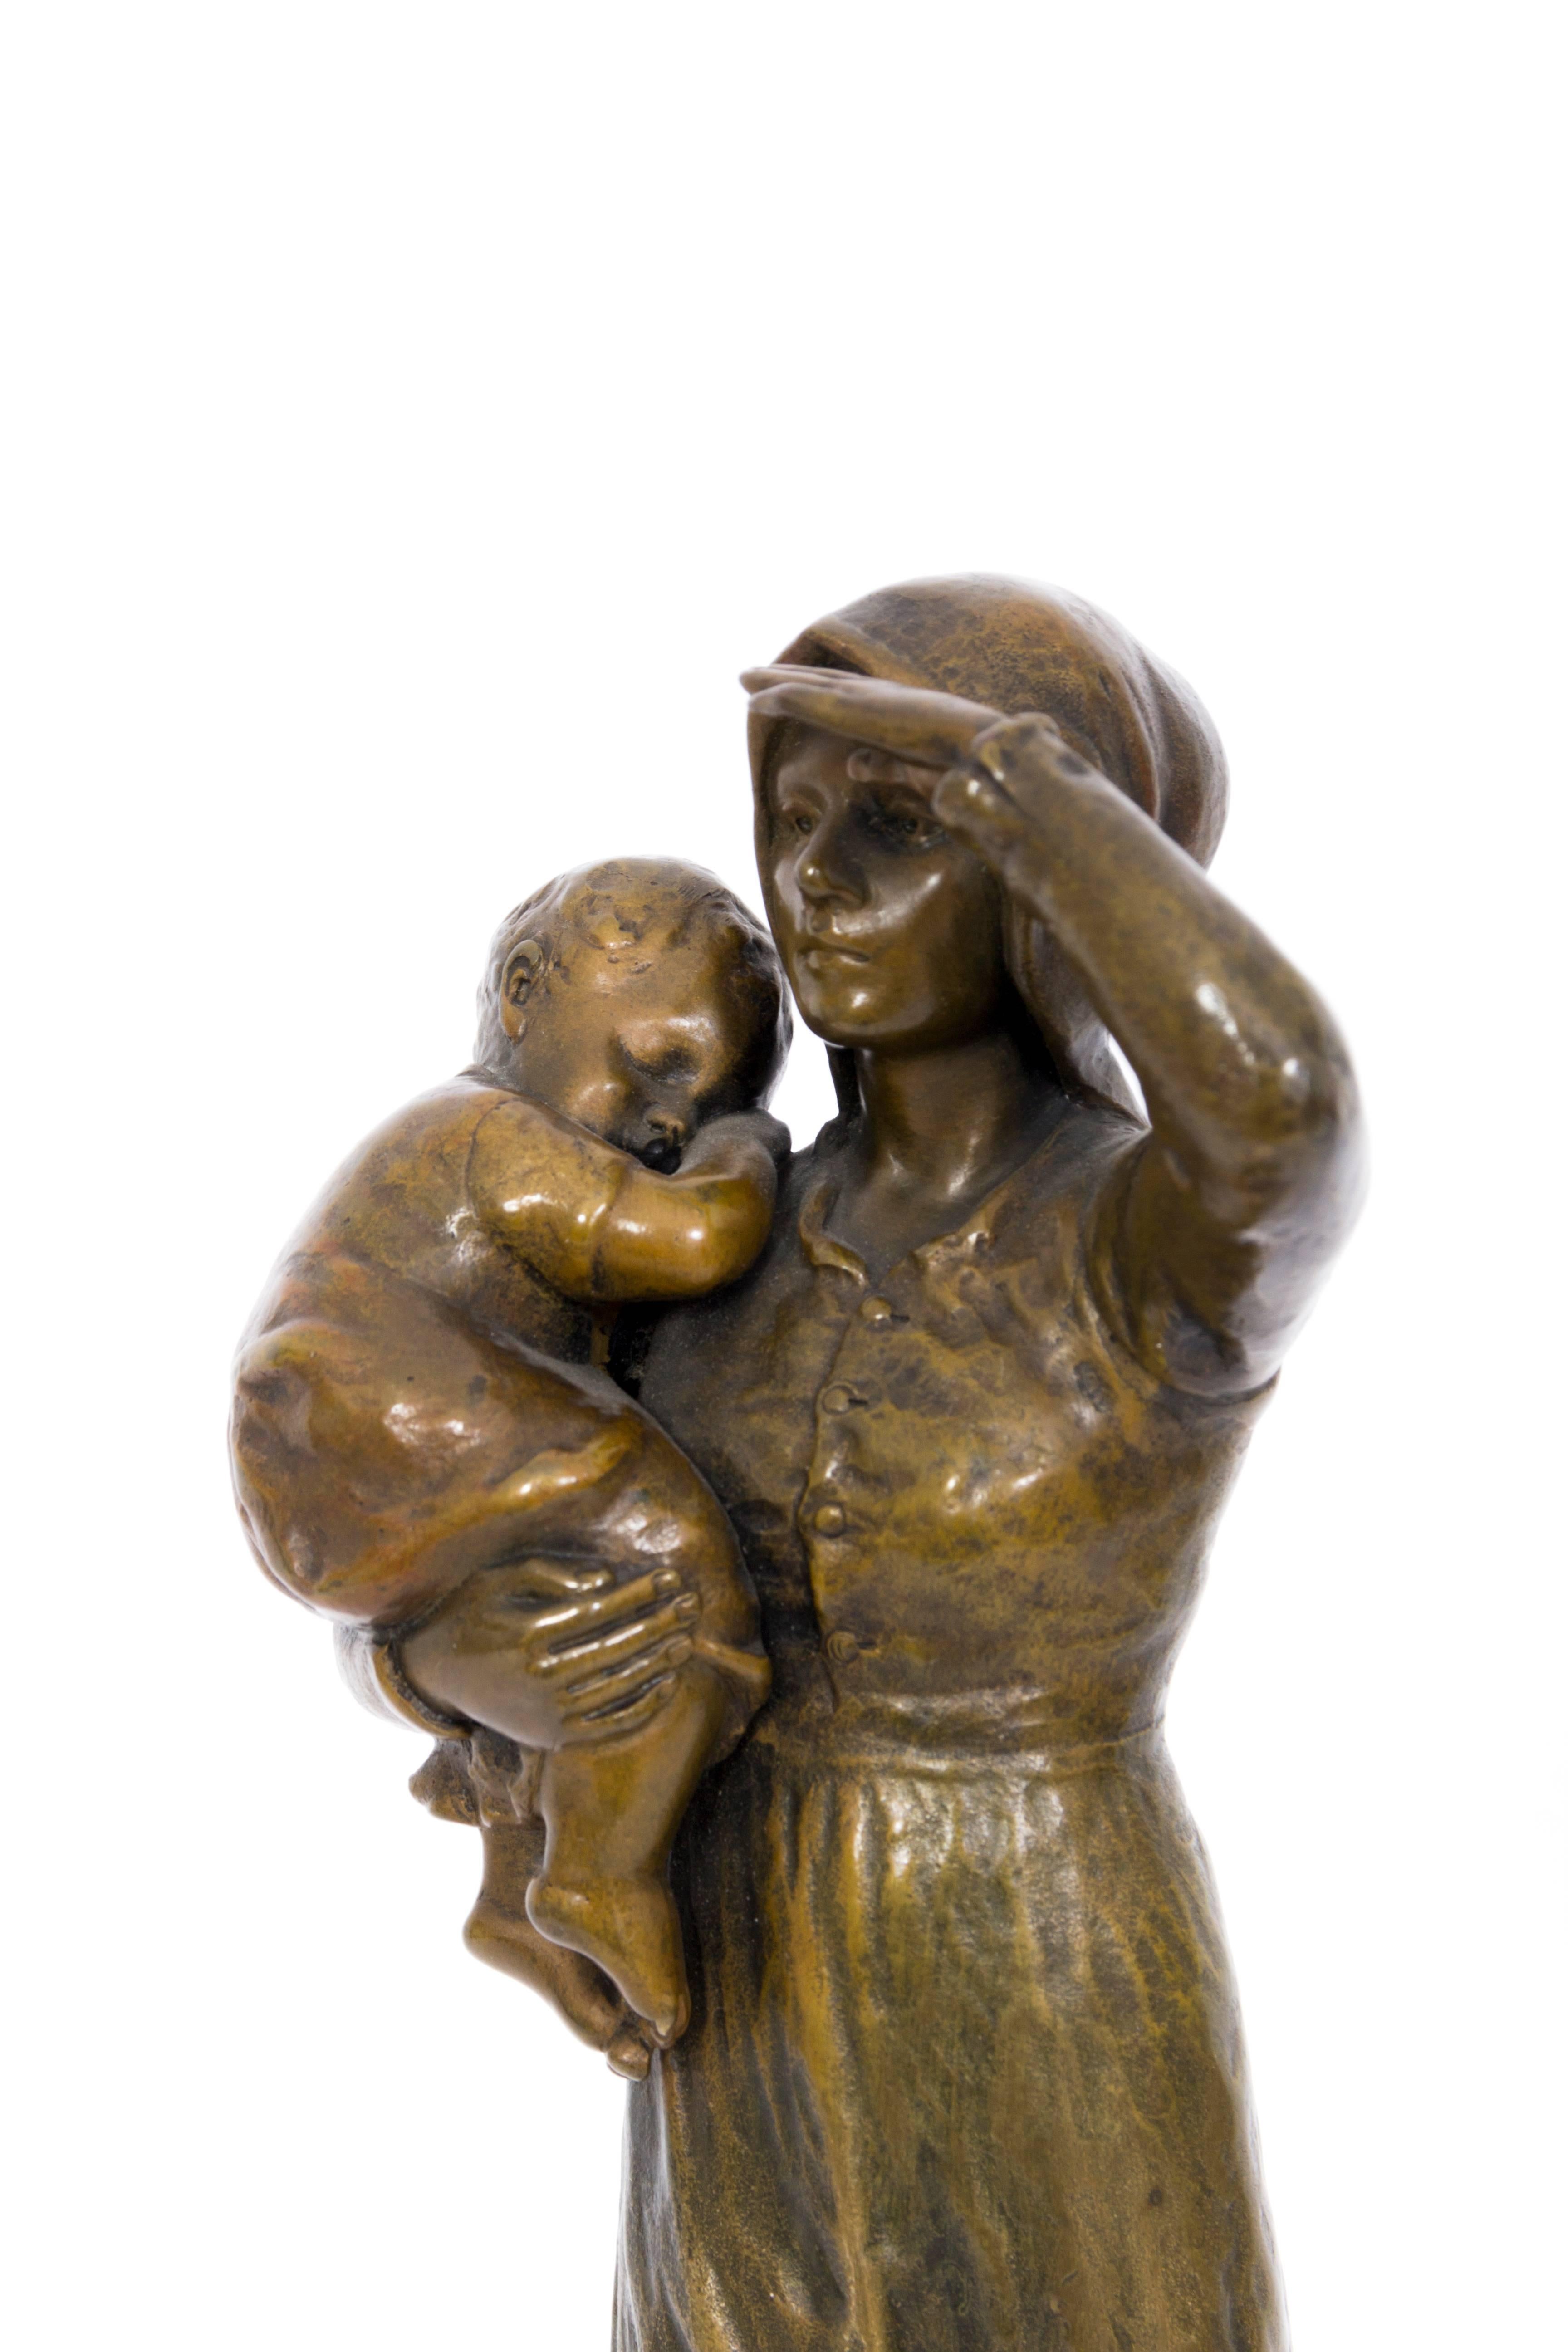 Bäuerin mit Kleinkind (Farmwoman with Child) - Bronze, Rural, around 1900 - Sculpture by Unknown